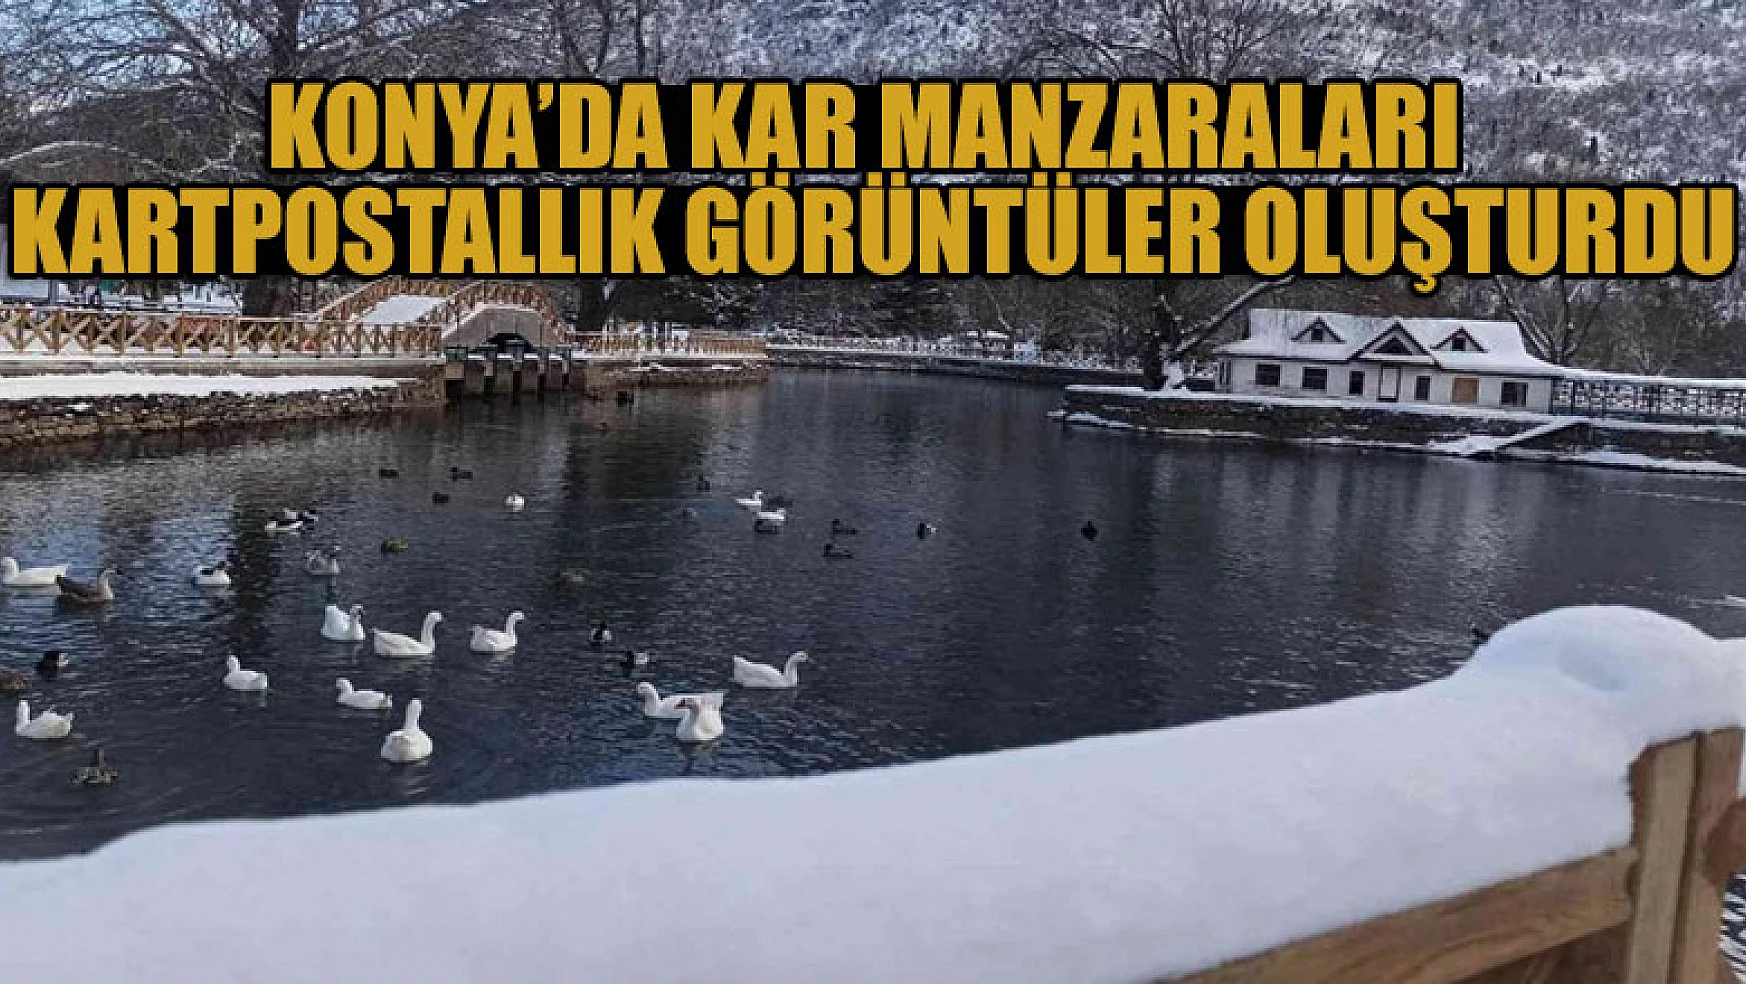 Konya'da kar manzaraları kartpostallık görüntüler oluşturdu